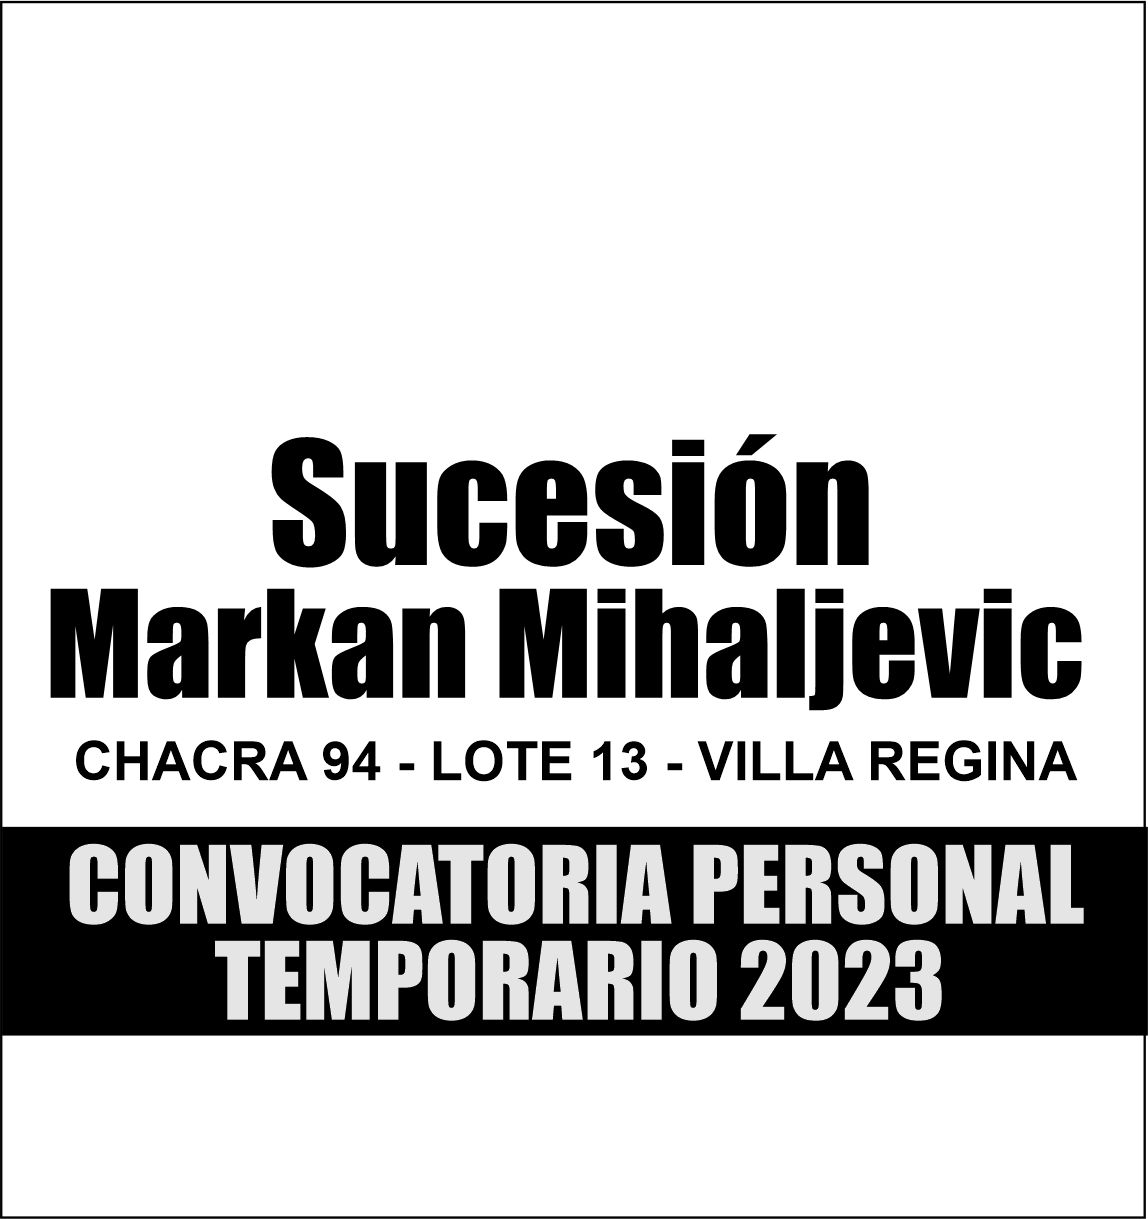 Convocatoria Personal Temporario 2023: Markan Mihaljevic